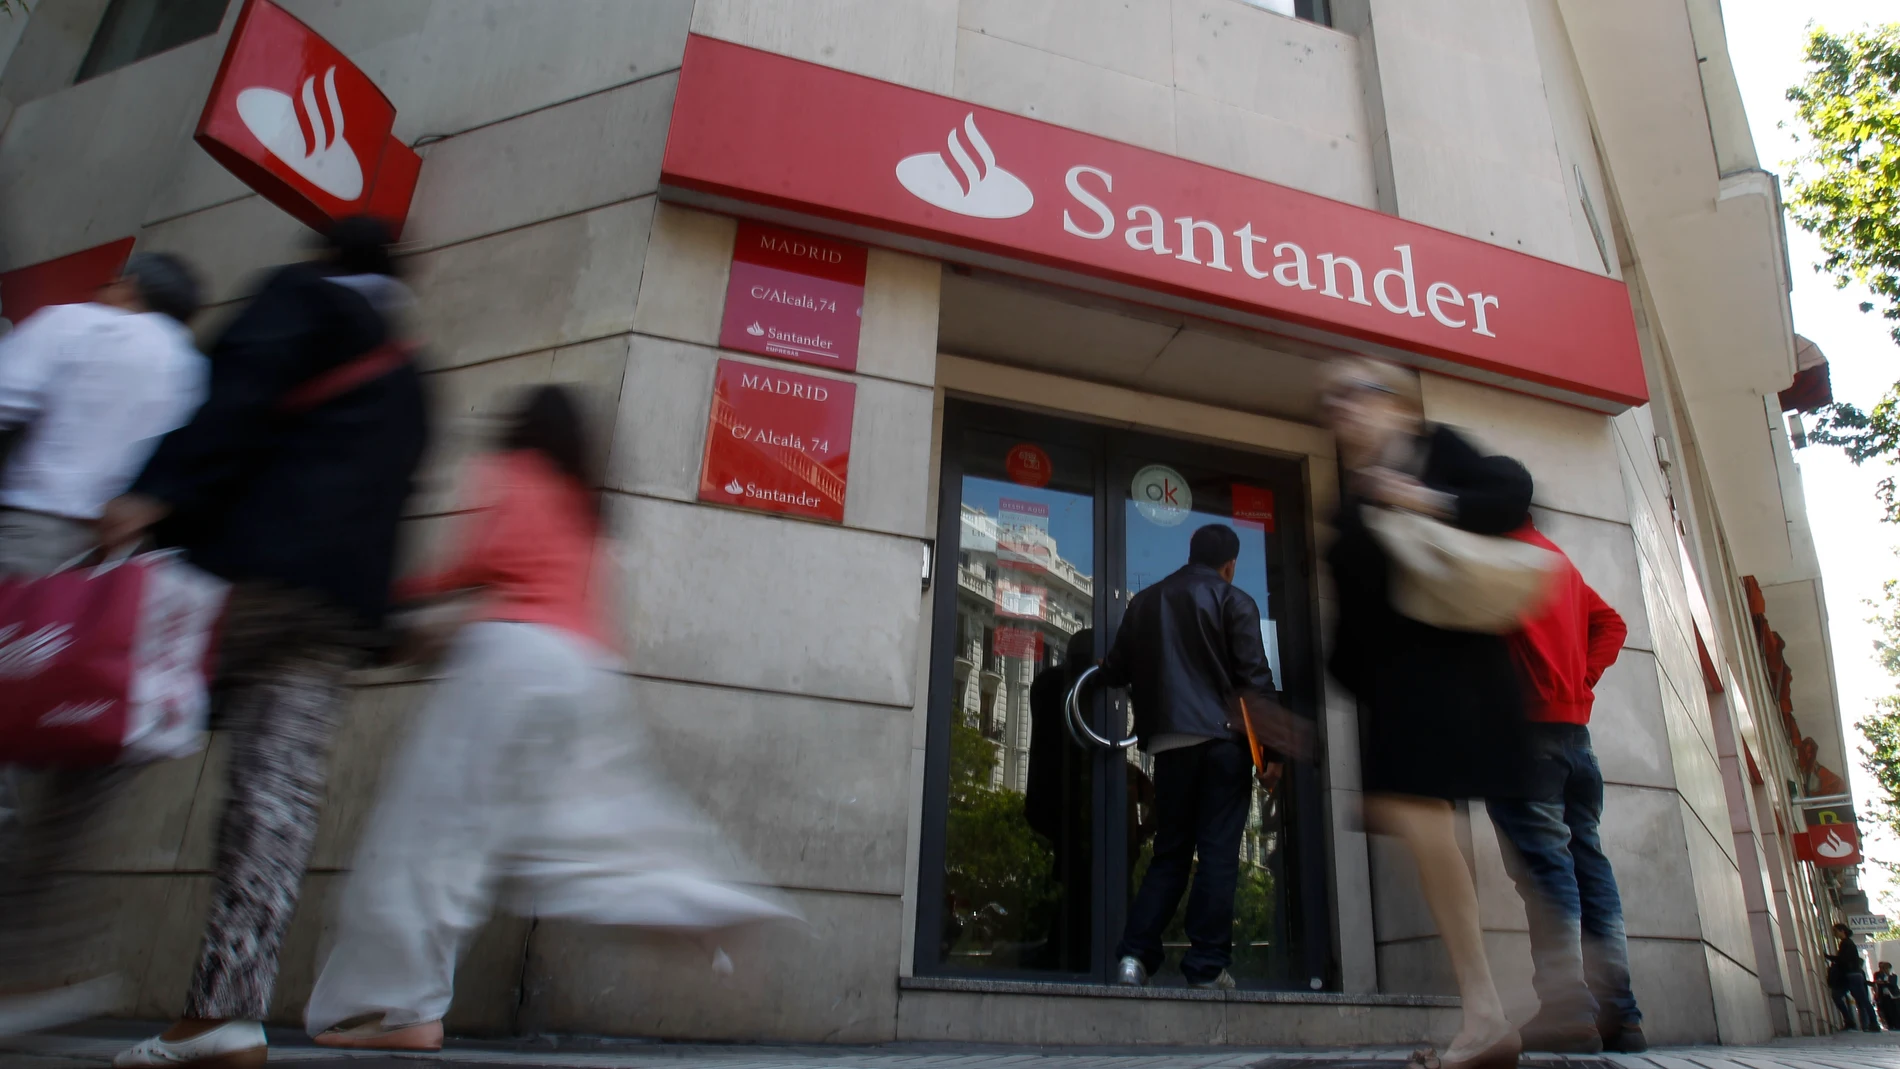 Oficina del Banco Santander